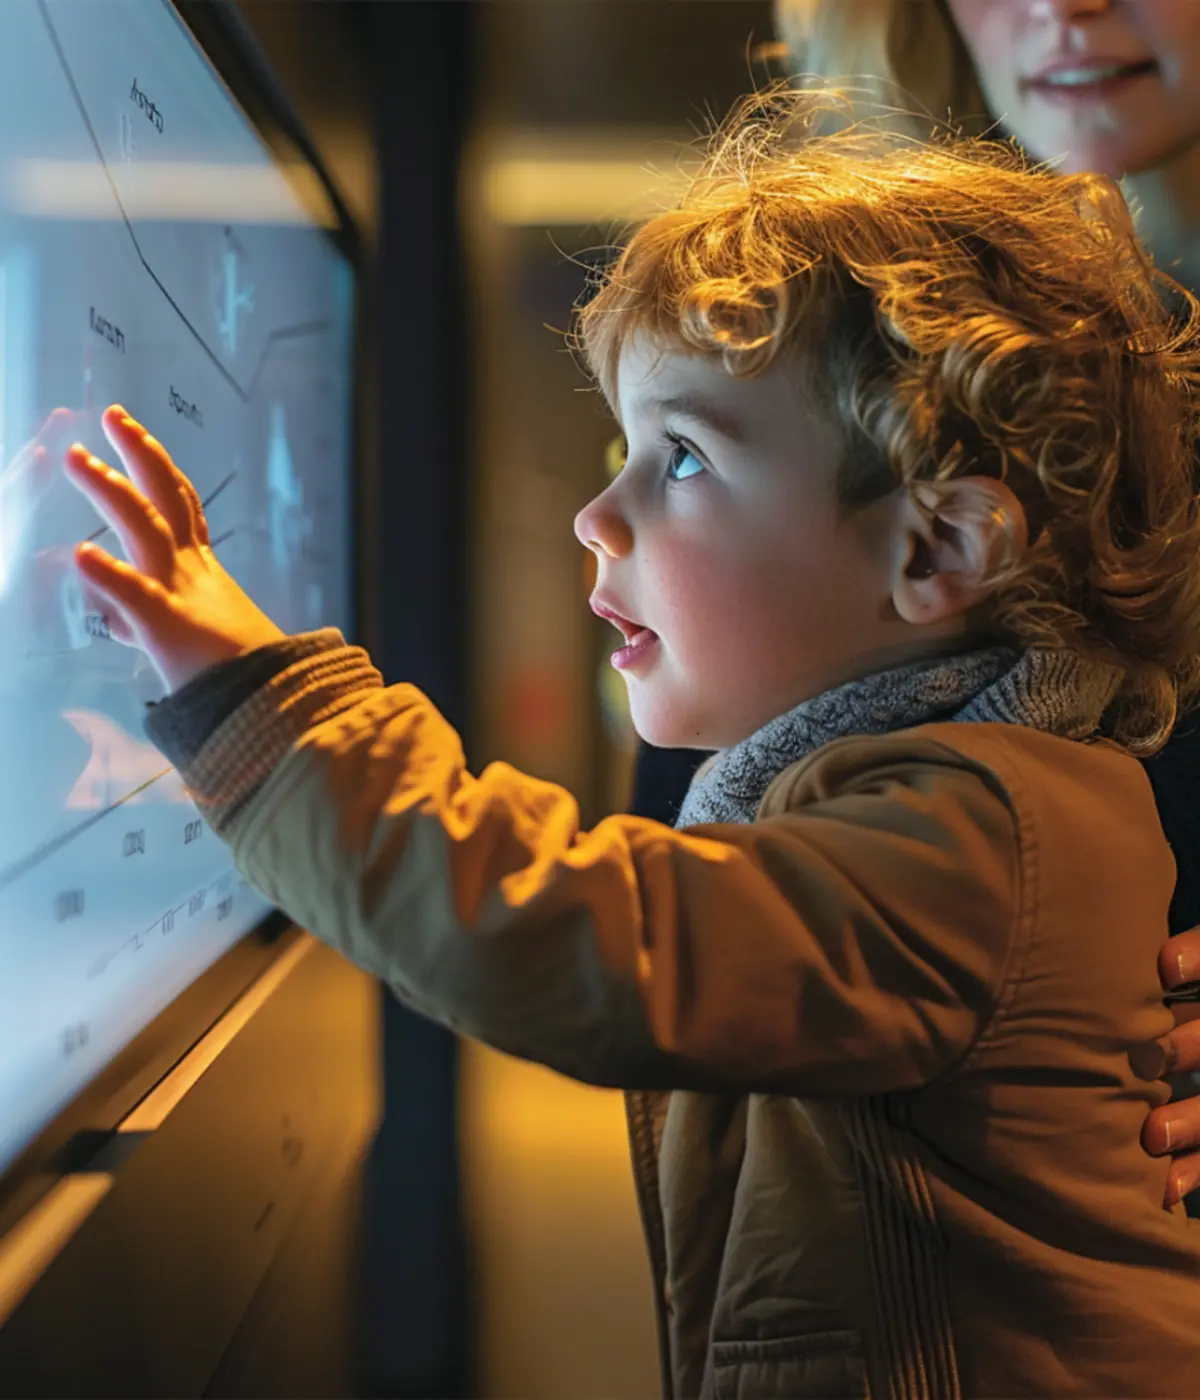 Enfant interagissant avec une borne tactile lors d'un atelier éducatif dans un musée, illustrant l'immersion et l'apprentissage interactif.